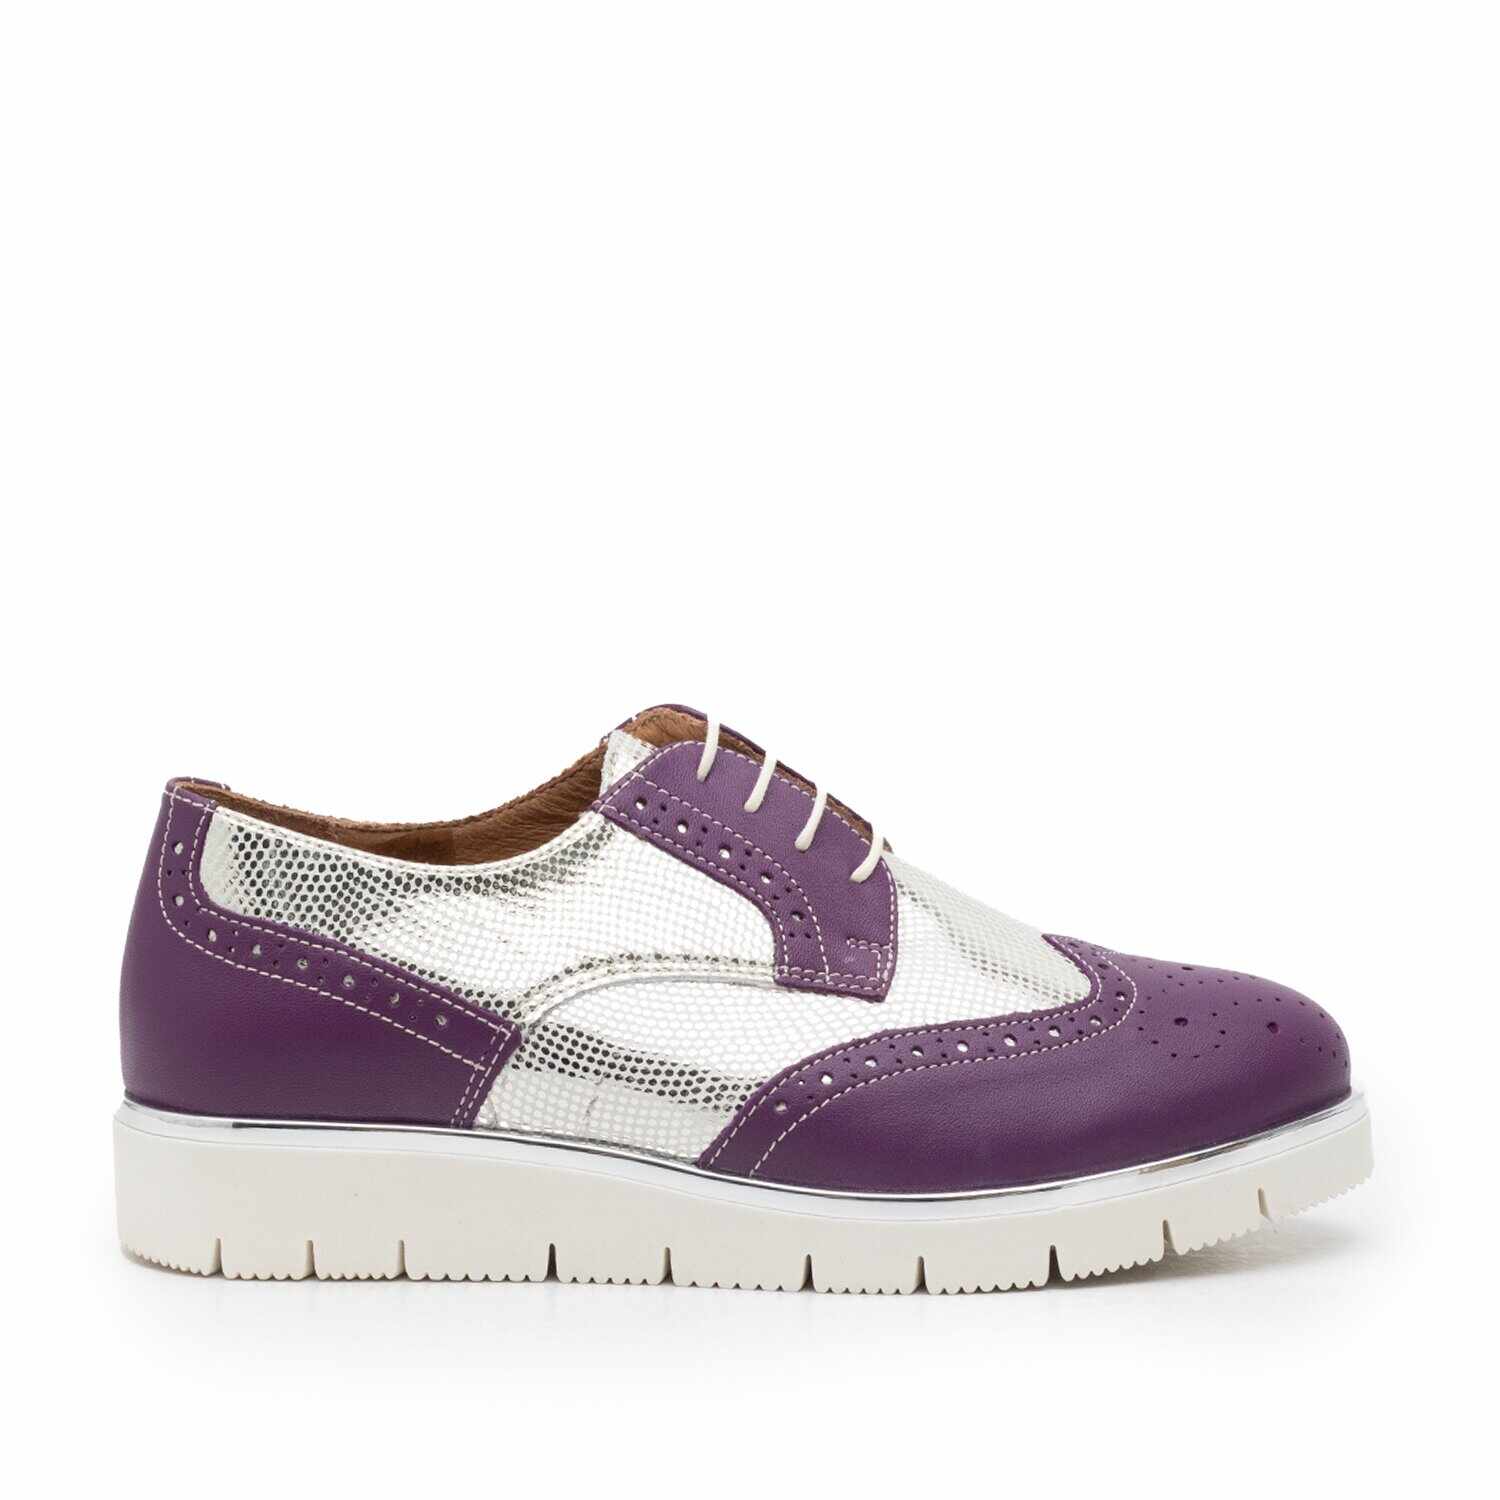 Pantofi casual dama din piele naturala, Leofex - 173 Violet Argintiu